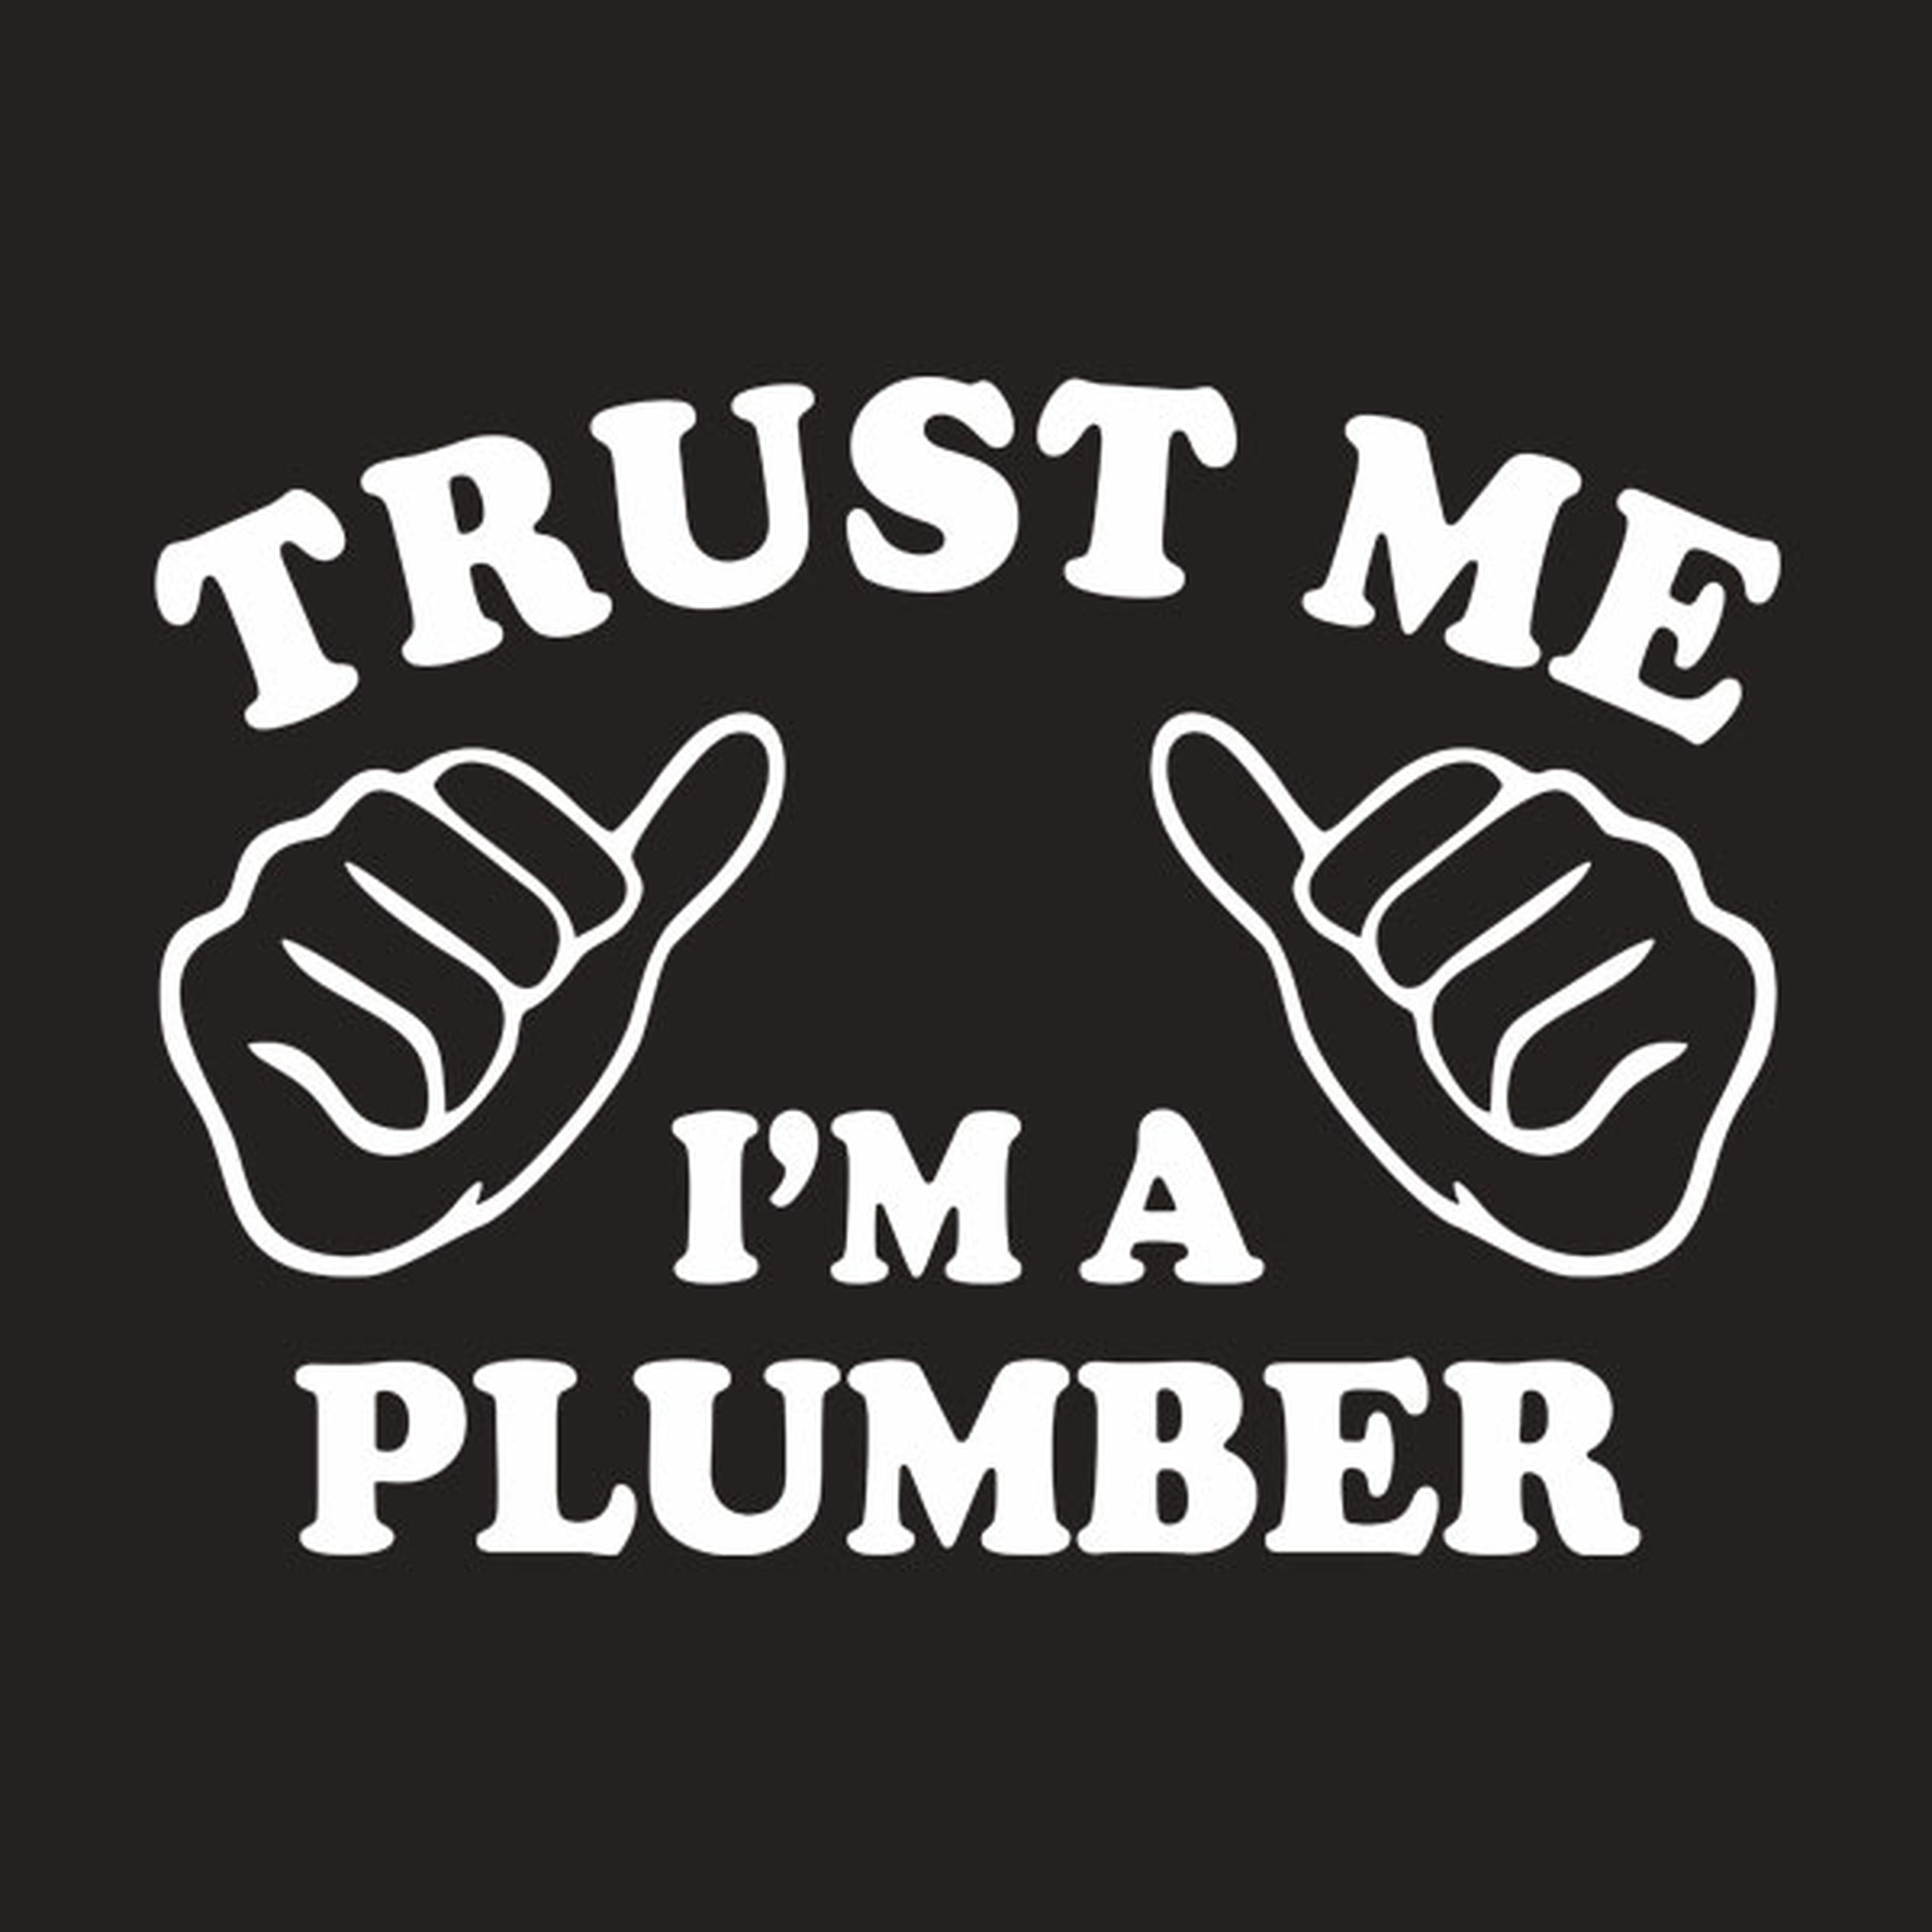 Trust me - I am a plumber - T-shirt